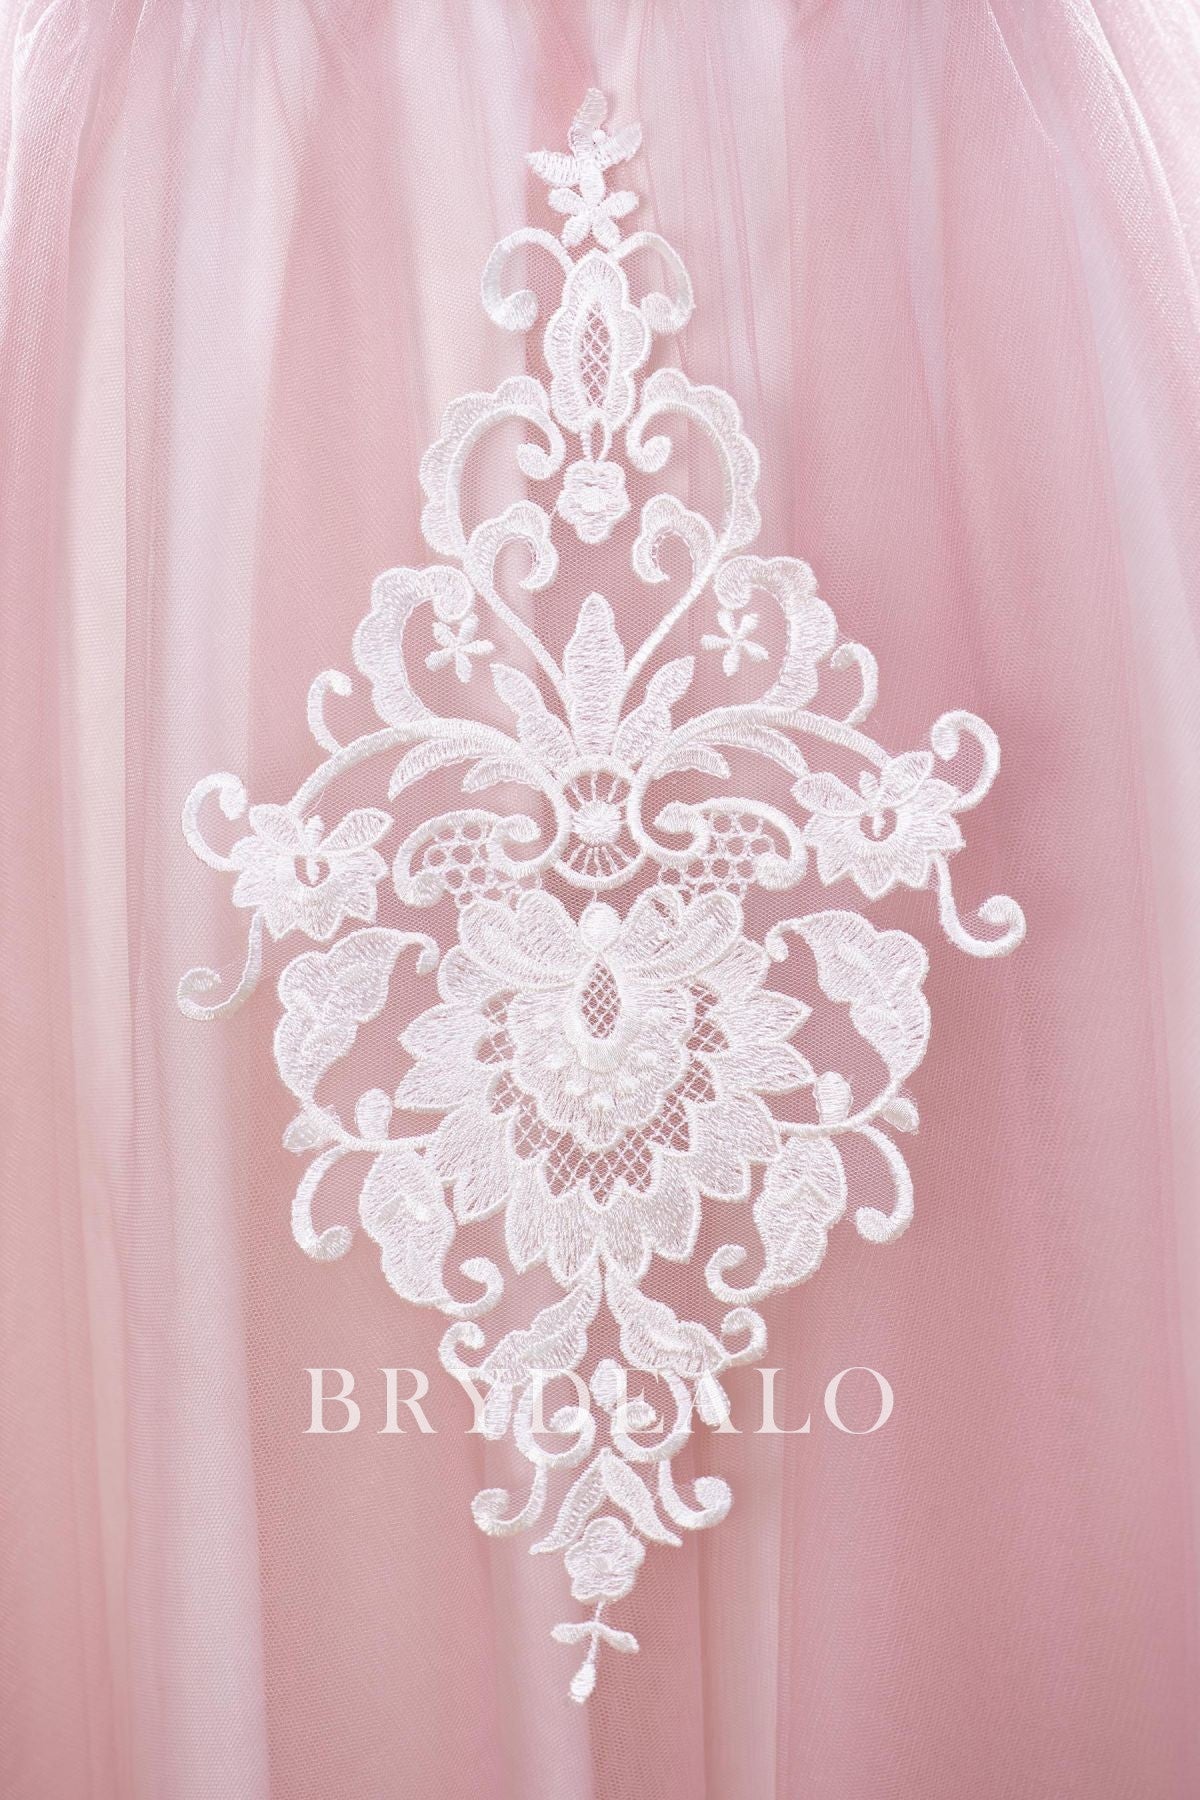 Symmetrical Bridal Lace Appliques for Wholesale